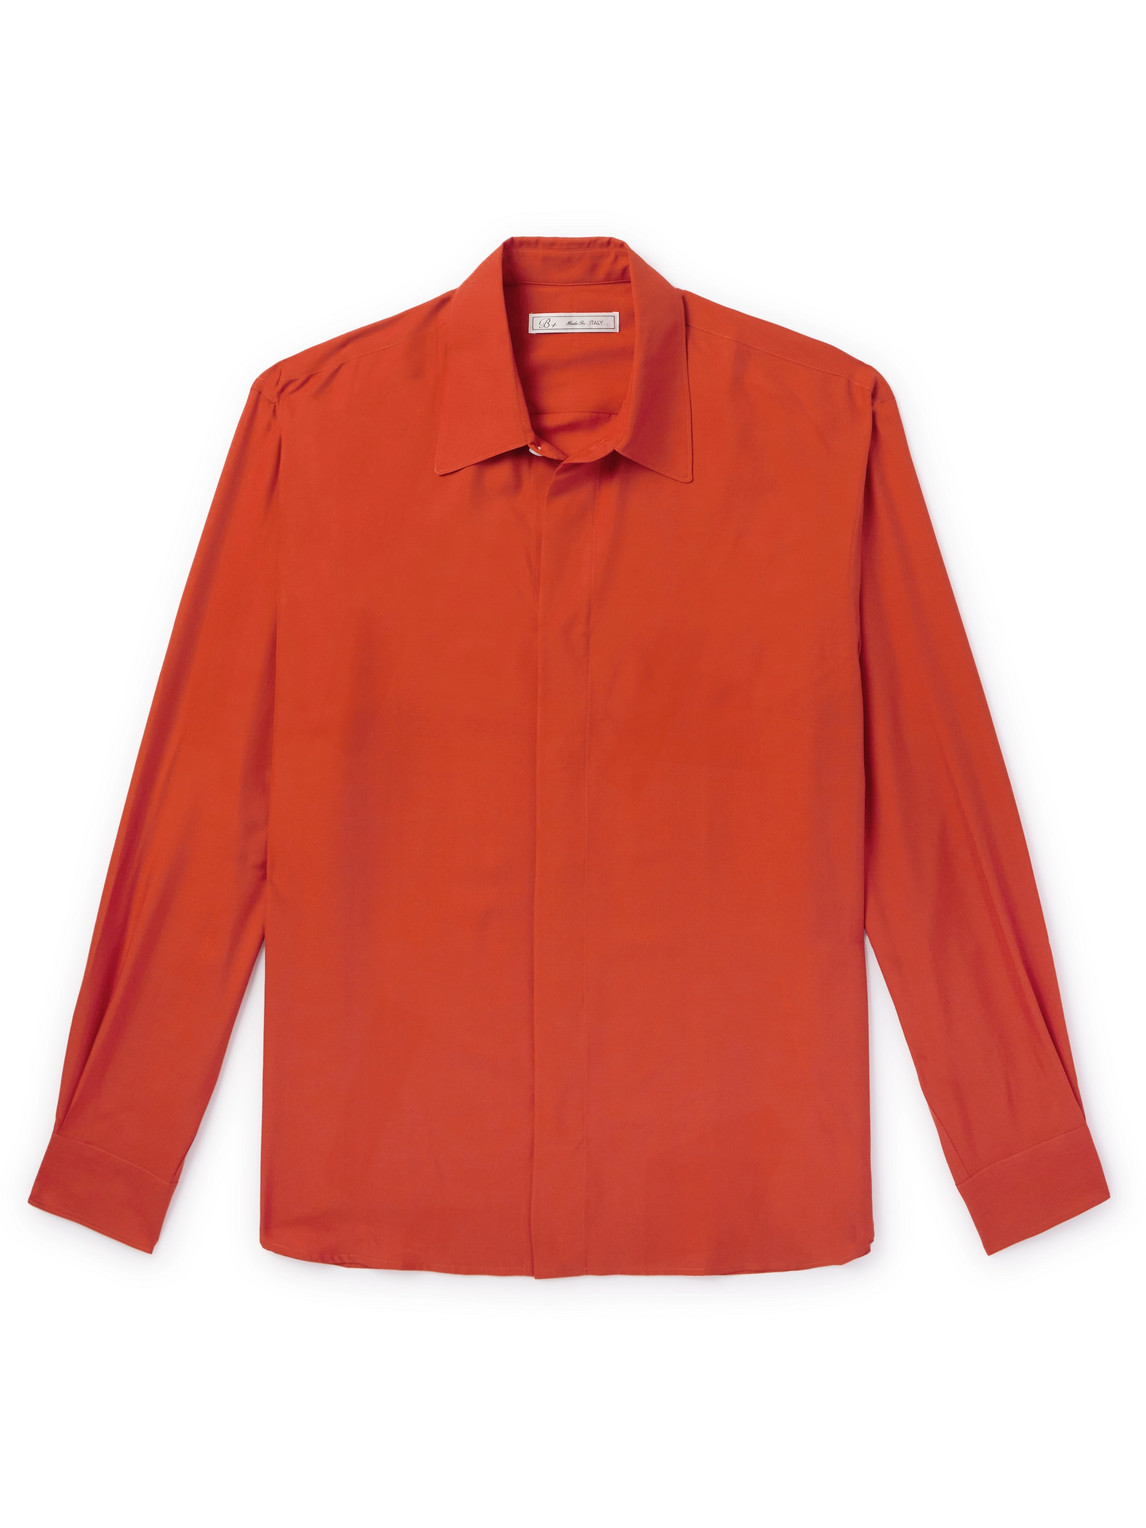 Umit Benan B+ Silk Shirt In Orange